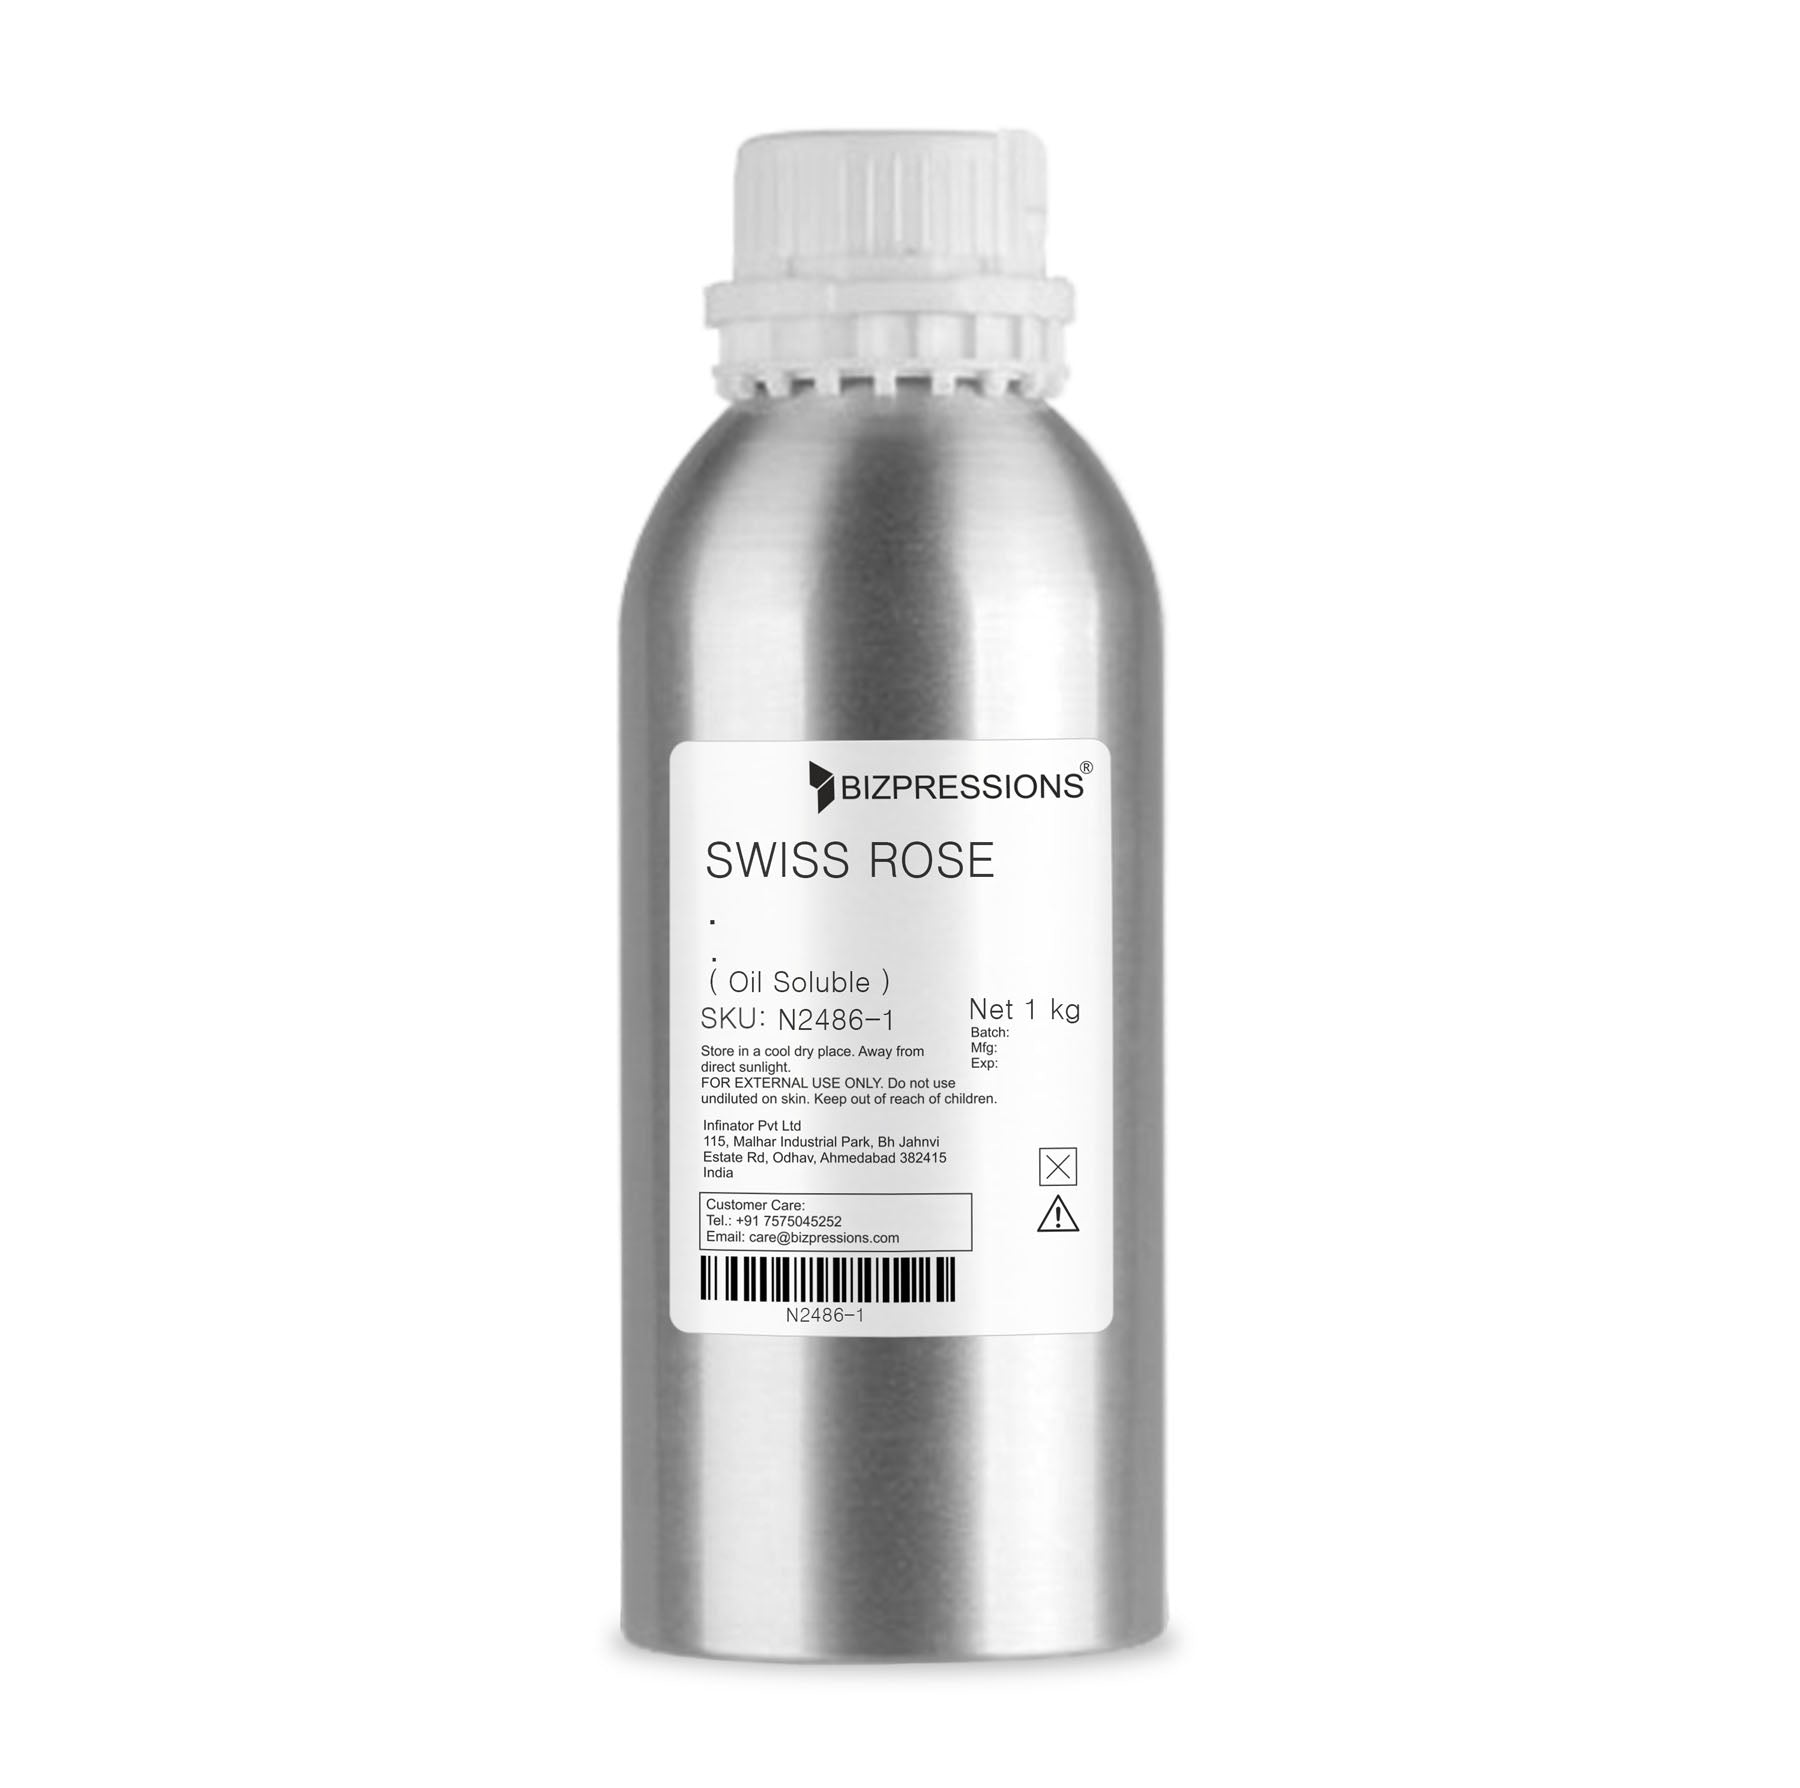 SWISS ROSE - Fragrance ( Oil Soluble ) - 1 kg